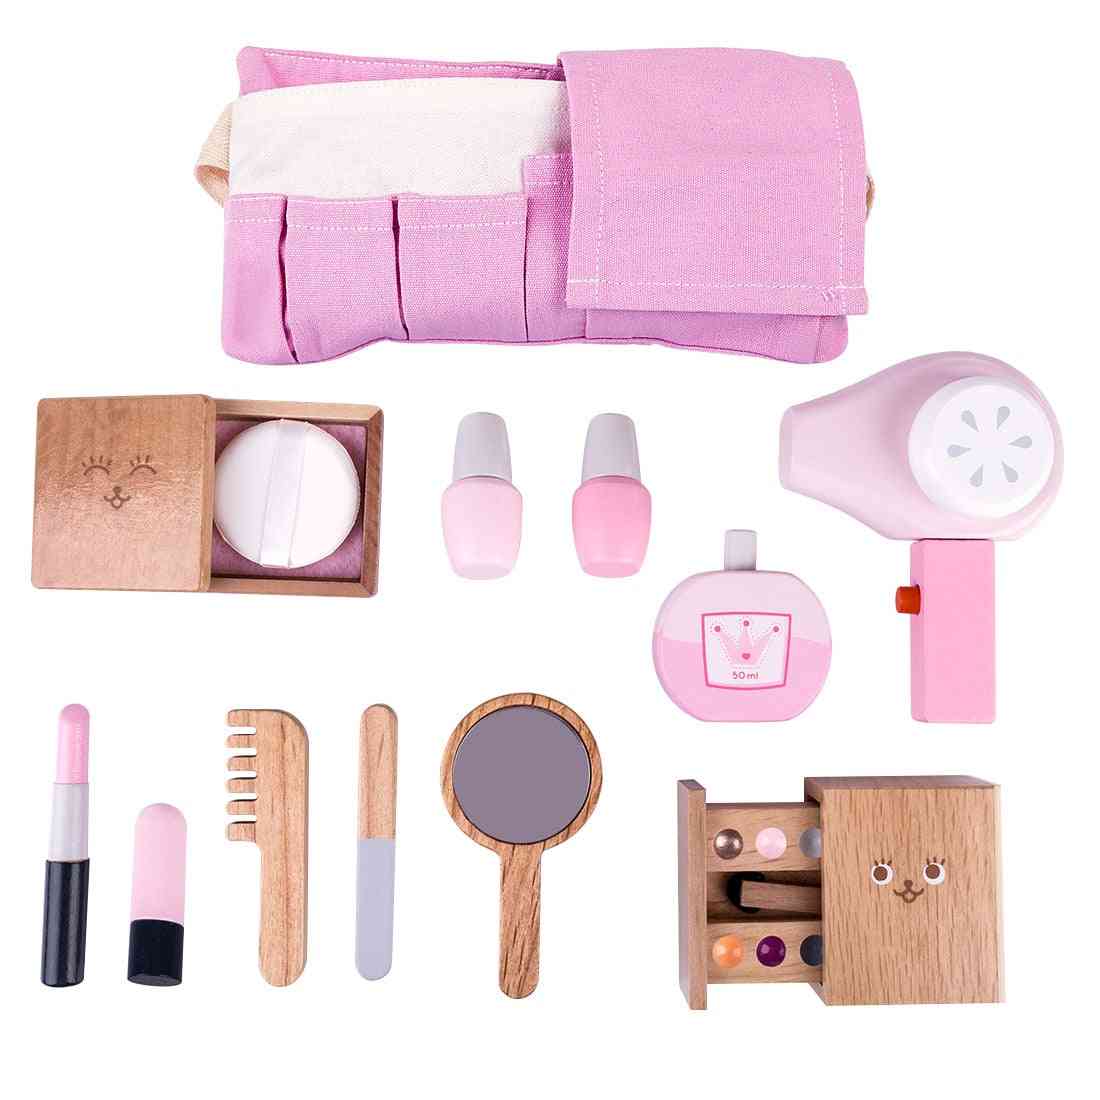 12 stk børn træ makeup make-up legesæt, simulering hårtørrer legetøj til piger børn